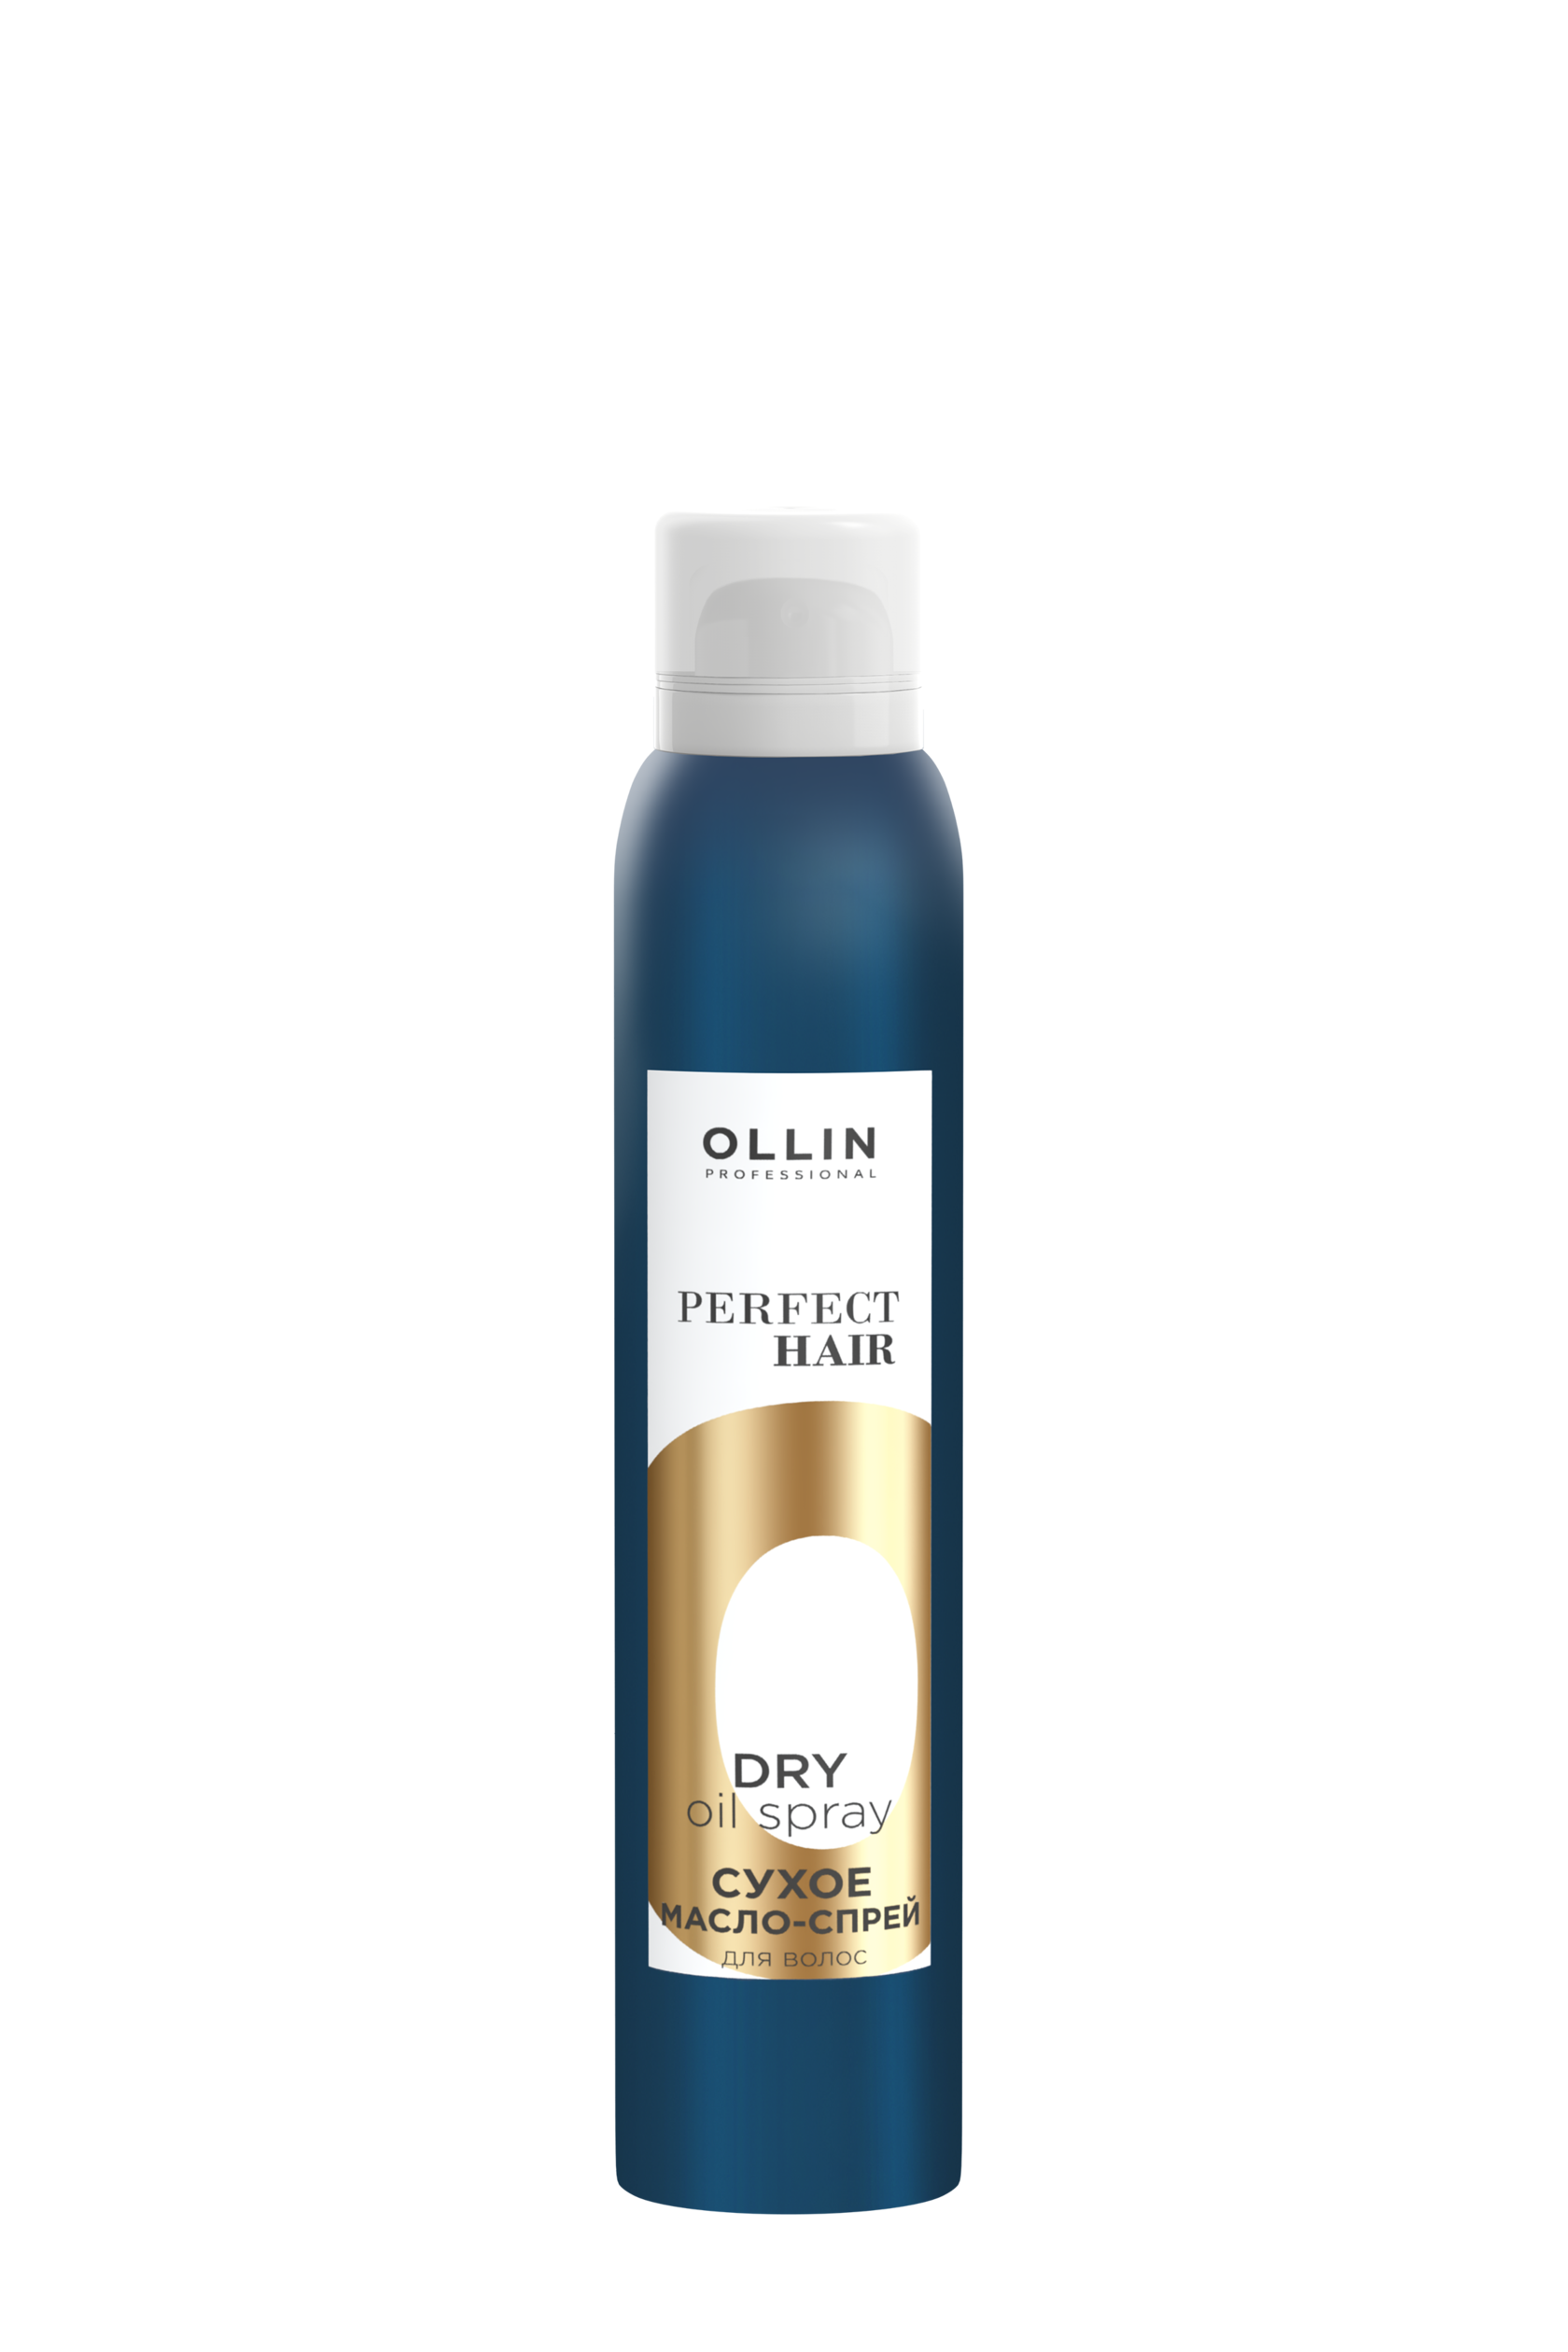 Сухое масло-спрей для волос - OLLIN